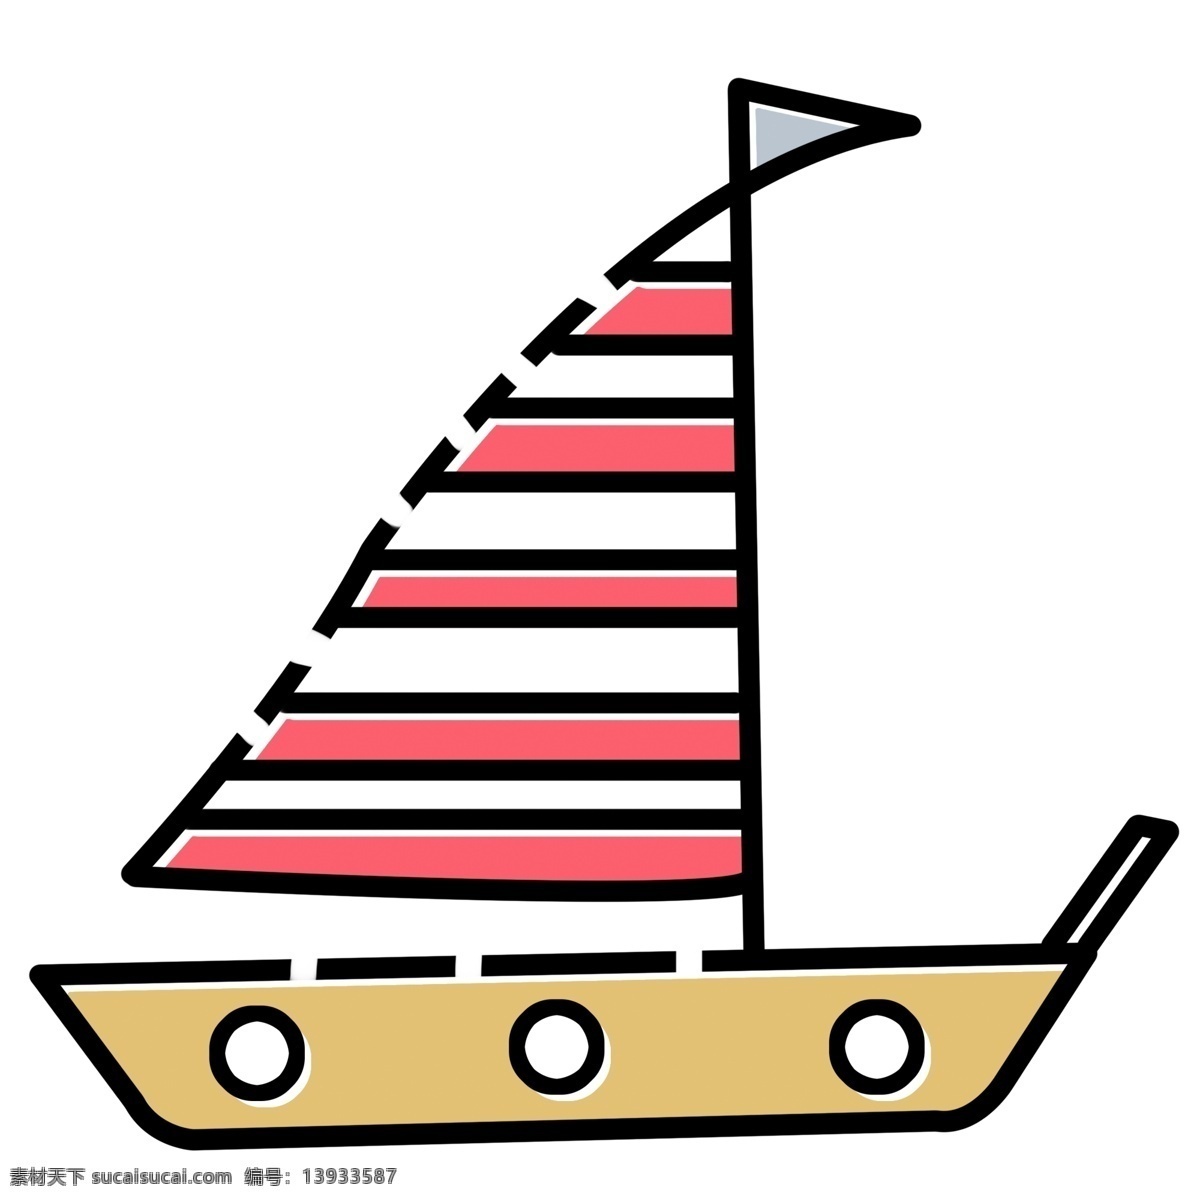 小小 卡通 船 免 抠 图 红色帆船 卡通插画 艺术插画 海上航行 儿童玩具 游乐 小小卡通船 手绘帆船